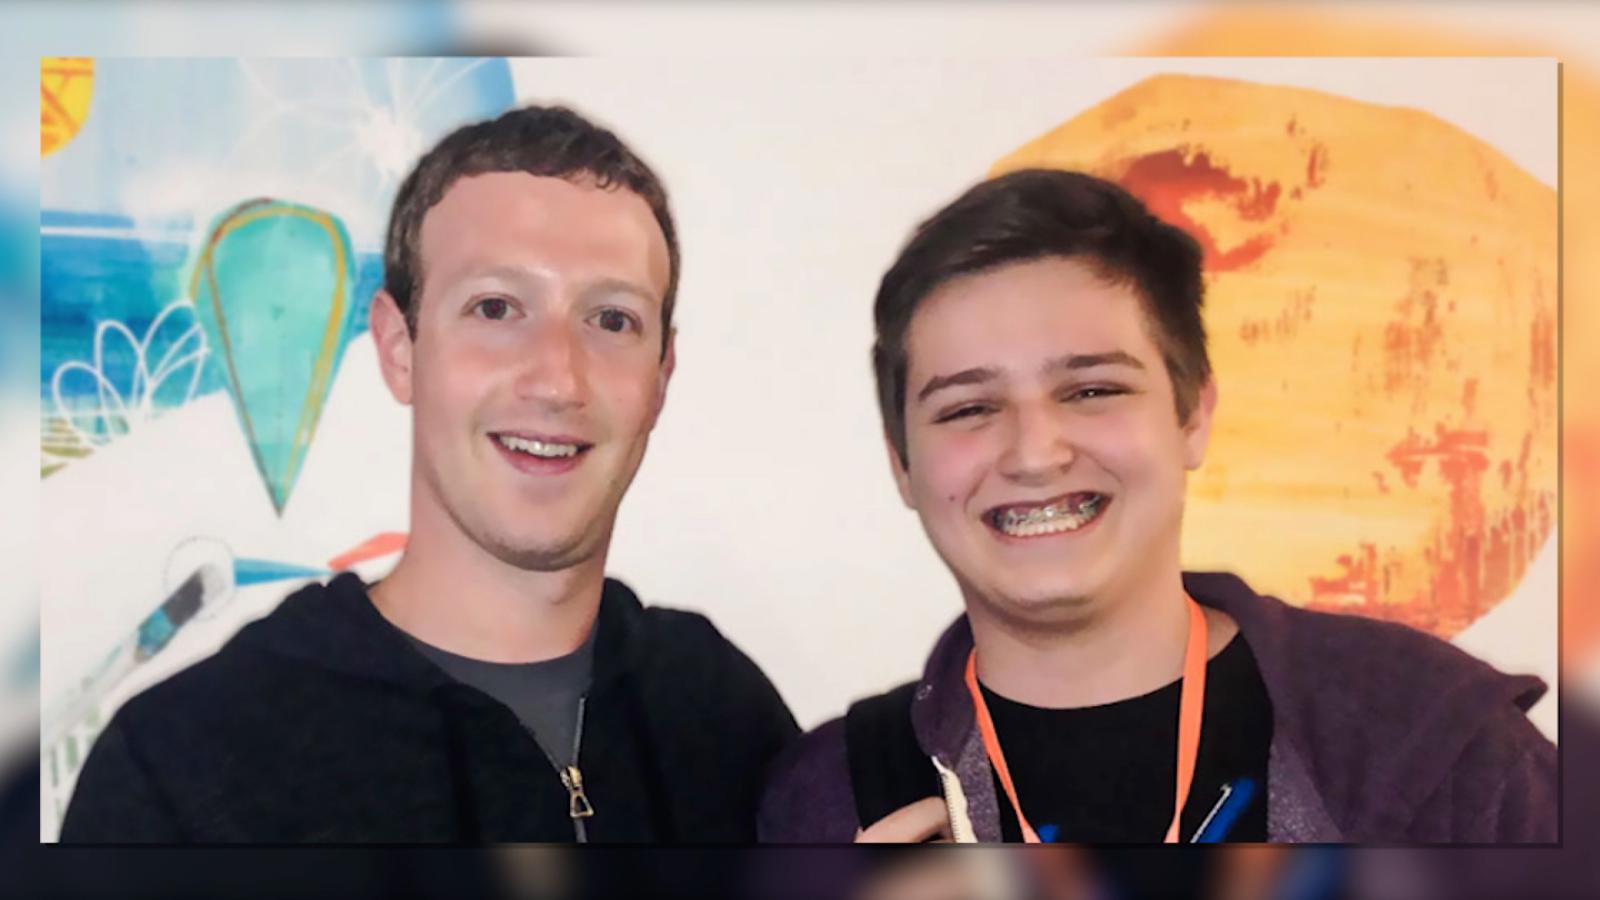 ¿Quién es Michael Sayman? El millonario adolescente latino que impresionó a Zuckerberg